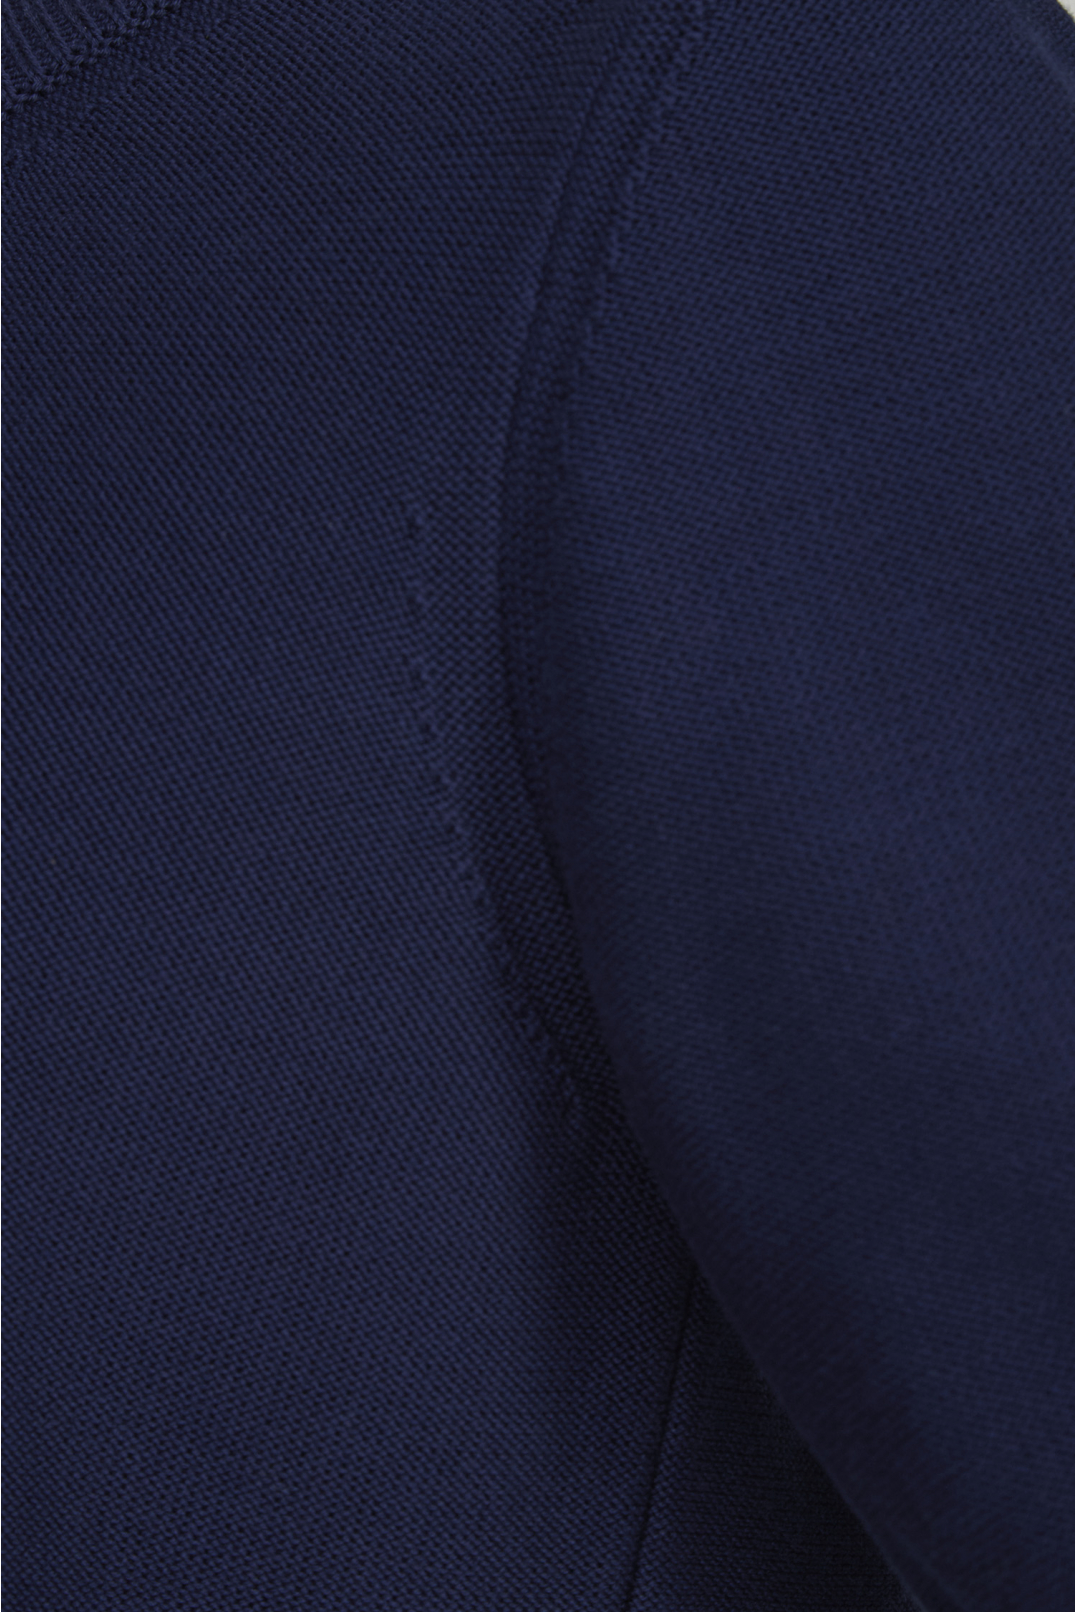 Женский темно-синий джемпер с коротким рукавом - 4